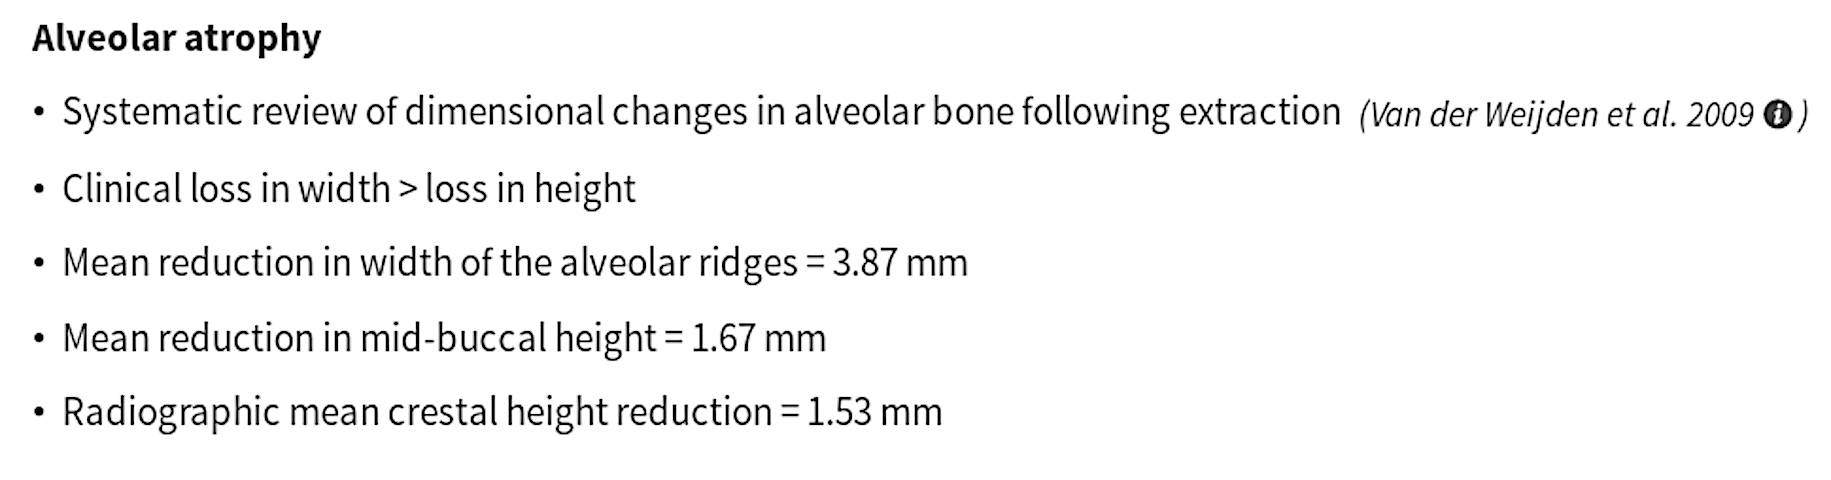 Dimensional change in alveolar bone